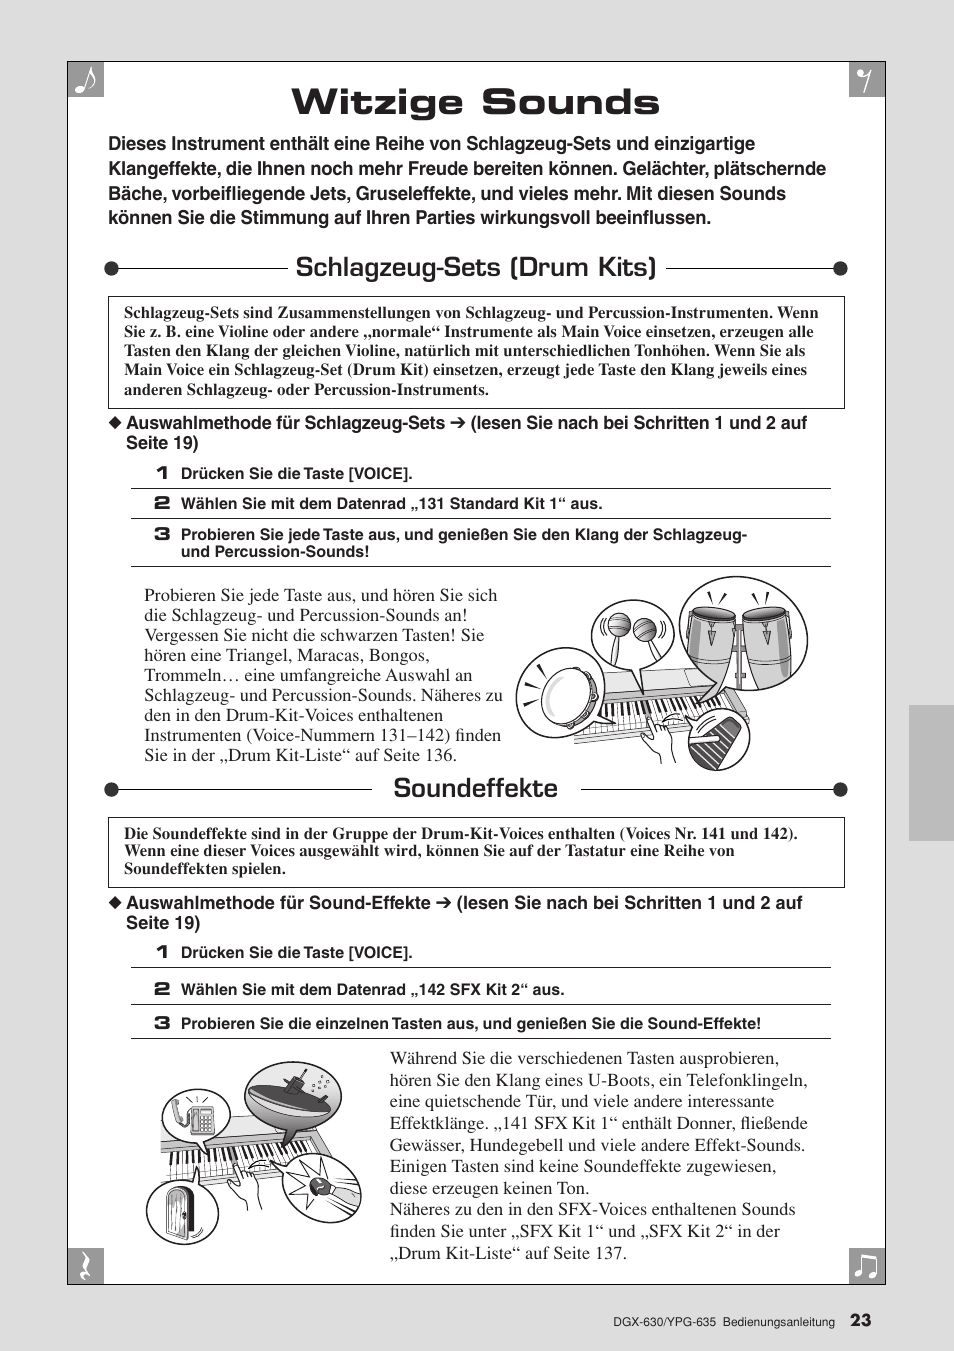 Witzige sounds, Schlagzeug-sets (drum kits), Soundeffekte | Schlagzeug-sets (drum kits) soundeffekte, Seite 23 | Yamaha DGX-630 Benutzerhandbuch | Seite 23 / 160